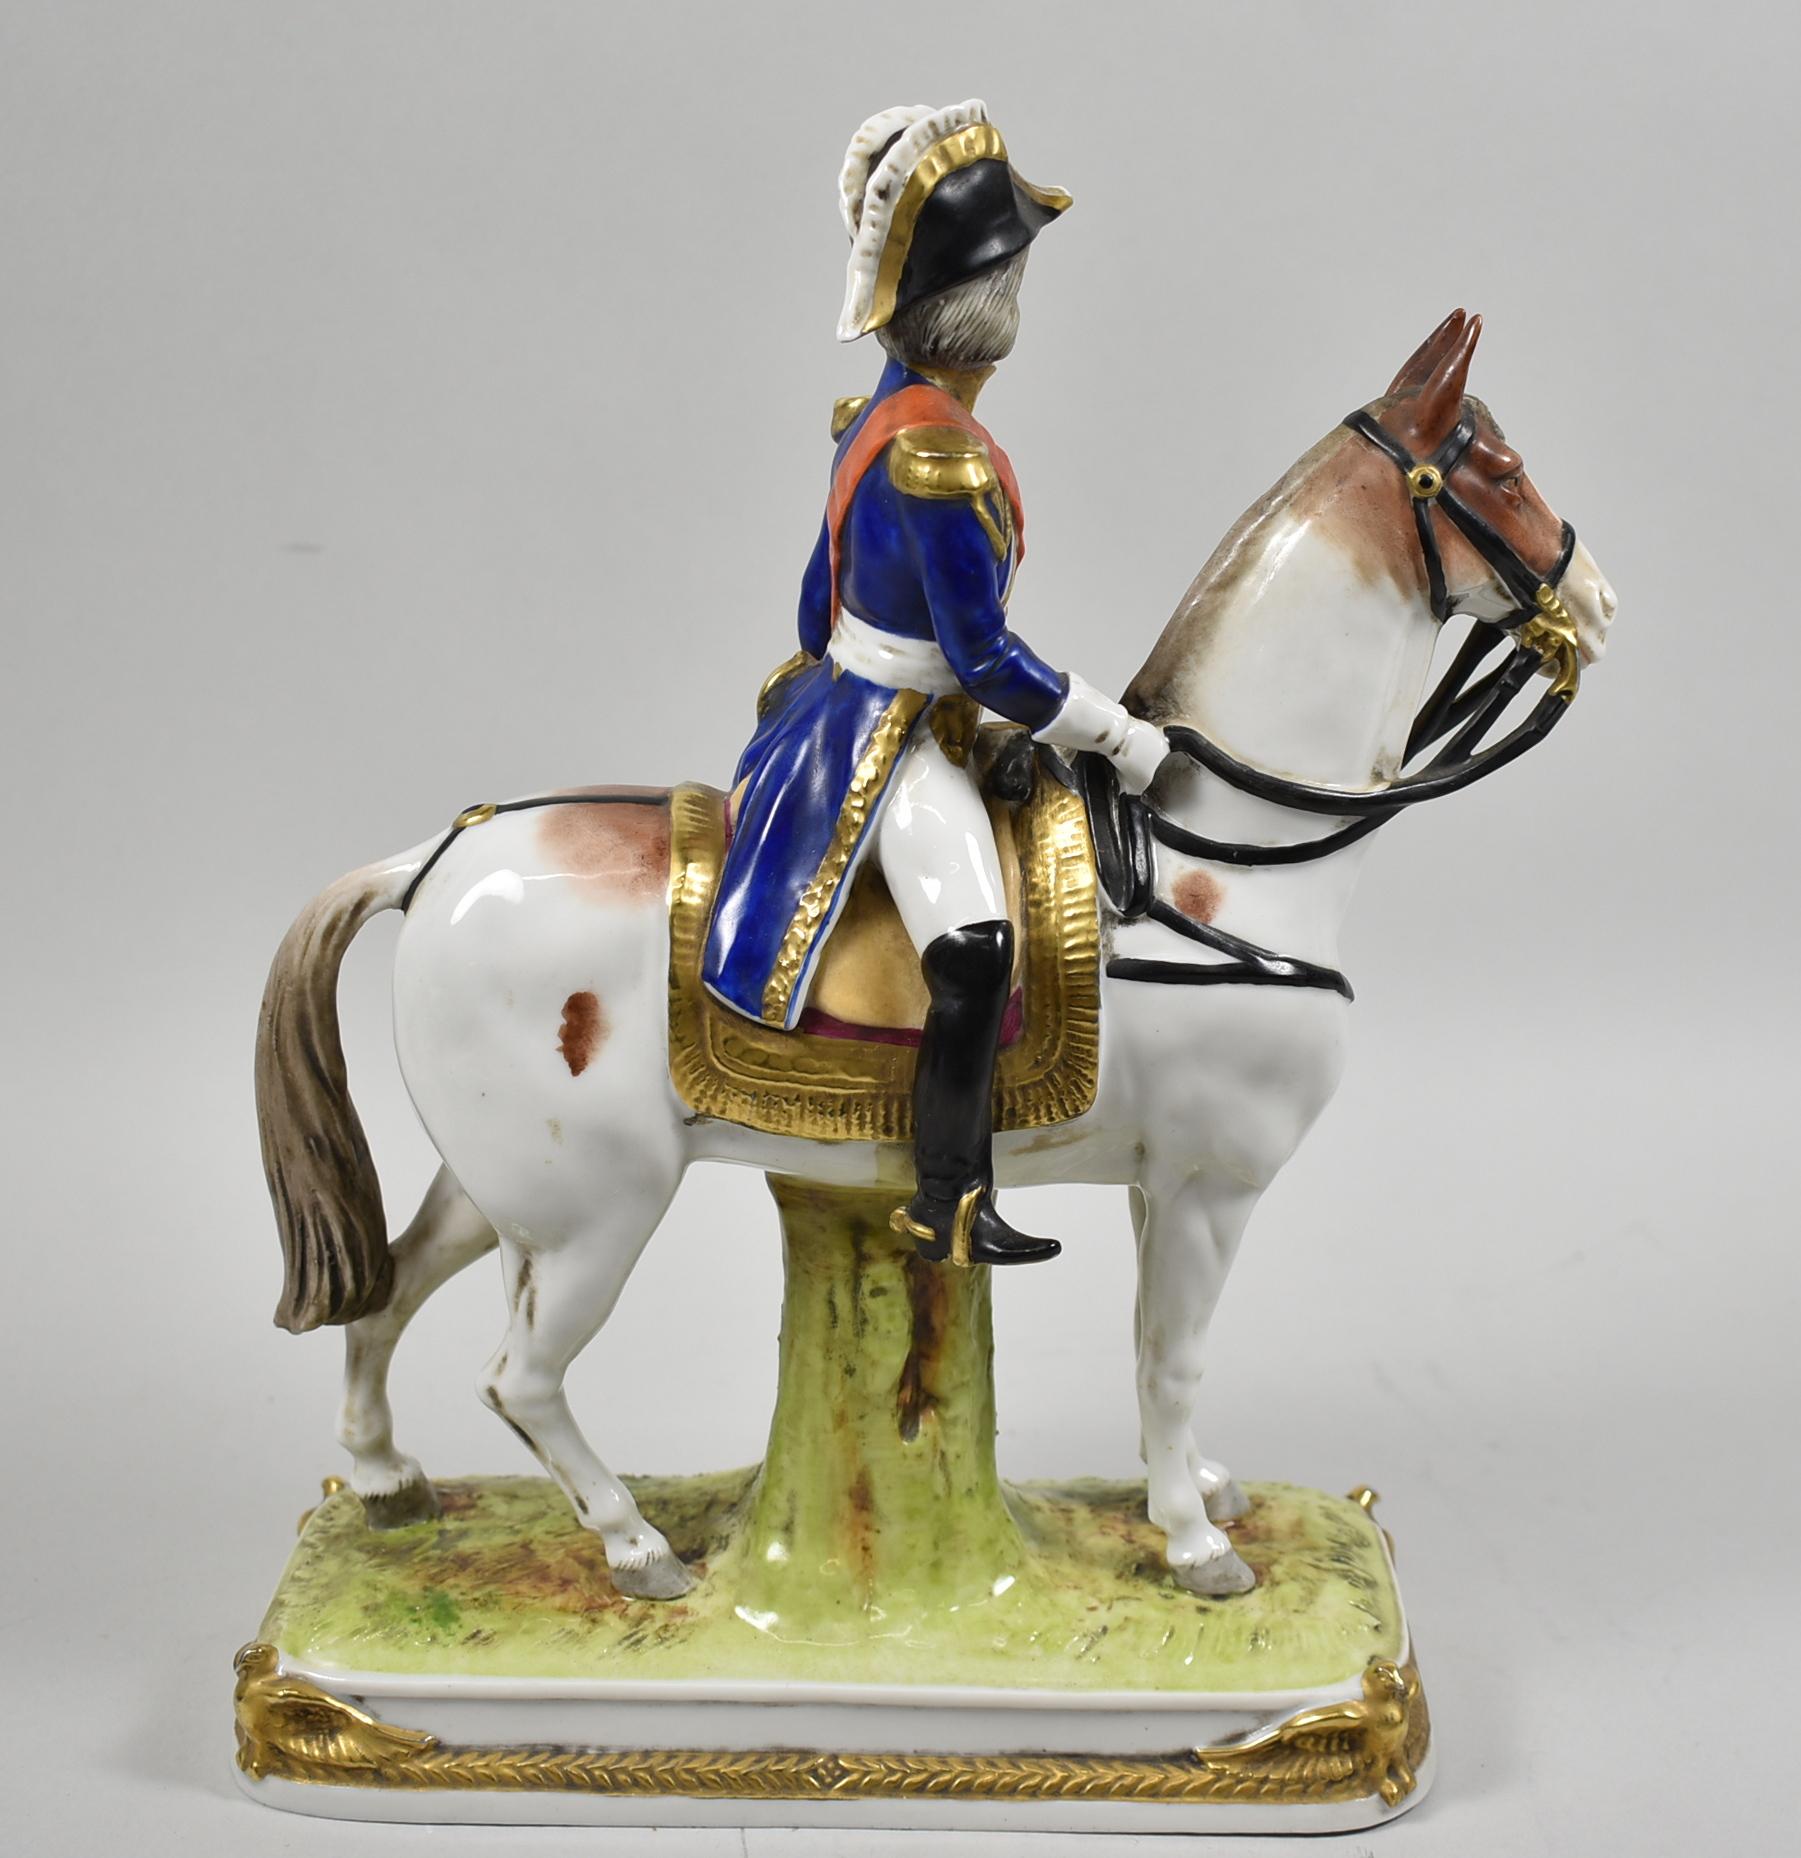 Soult Scheibe - Alsbach Allemagne général en porcelaine à cheval tenant une lorgnette. Des oiseaux dorés sur les coins. Aucun dommage. Dimensions : 3.5